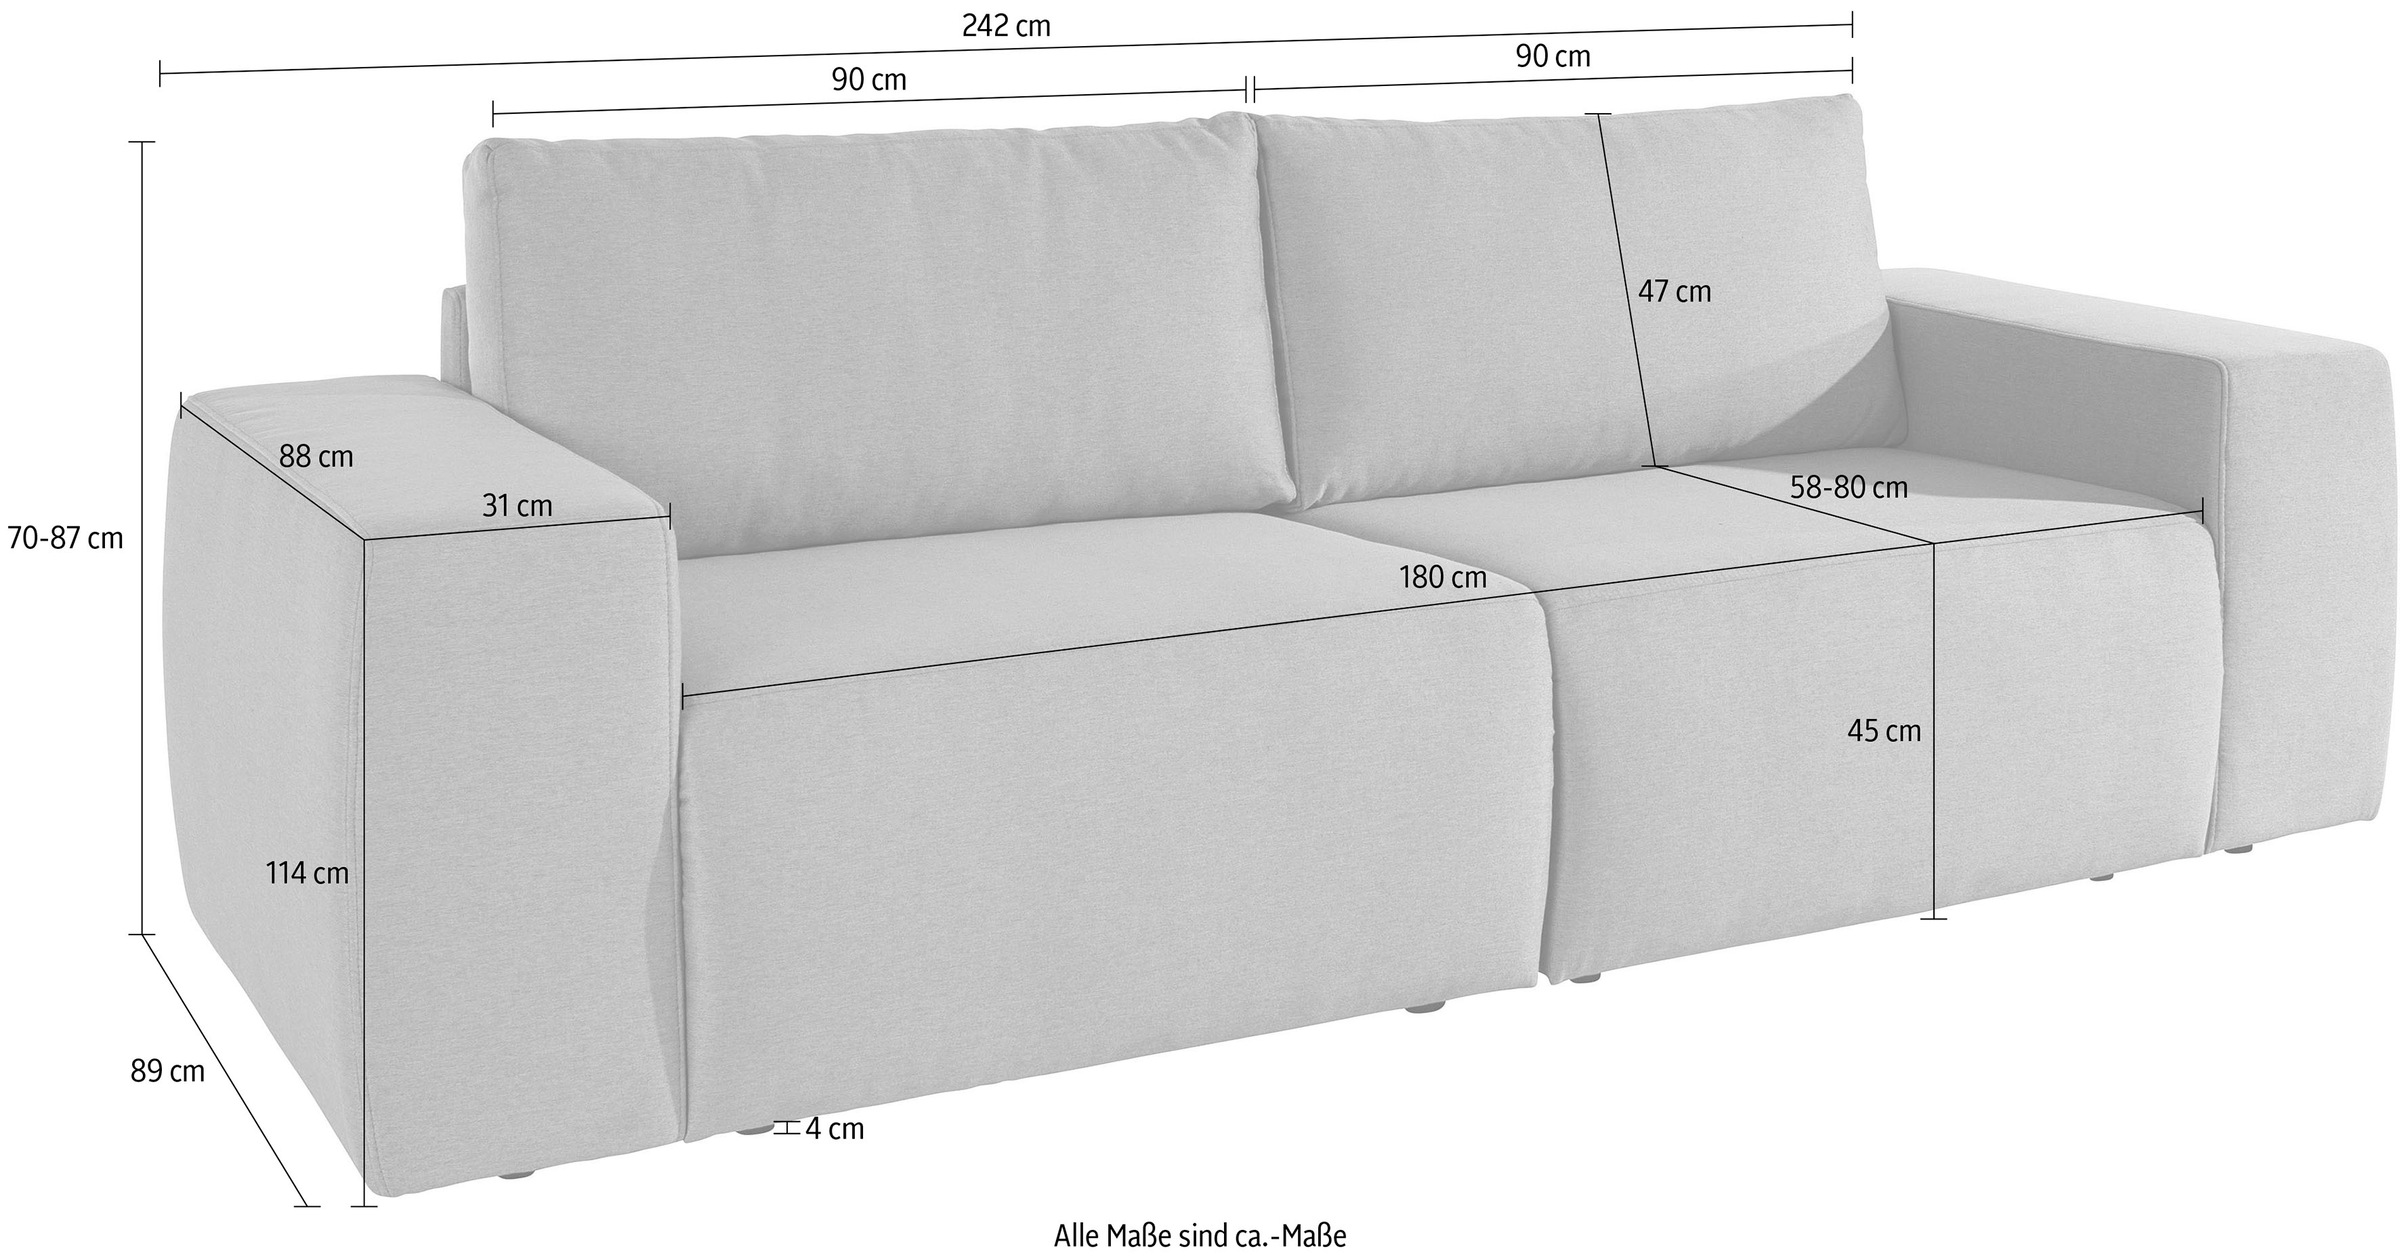 Big-Sofa kaufen by Wolfgang Joop geradlinig LOOKS komfortabel Rechnung »LooksII«, und auf